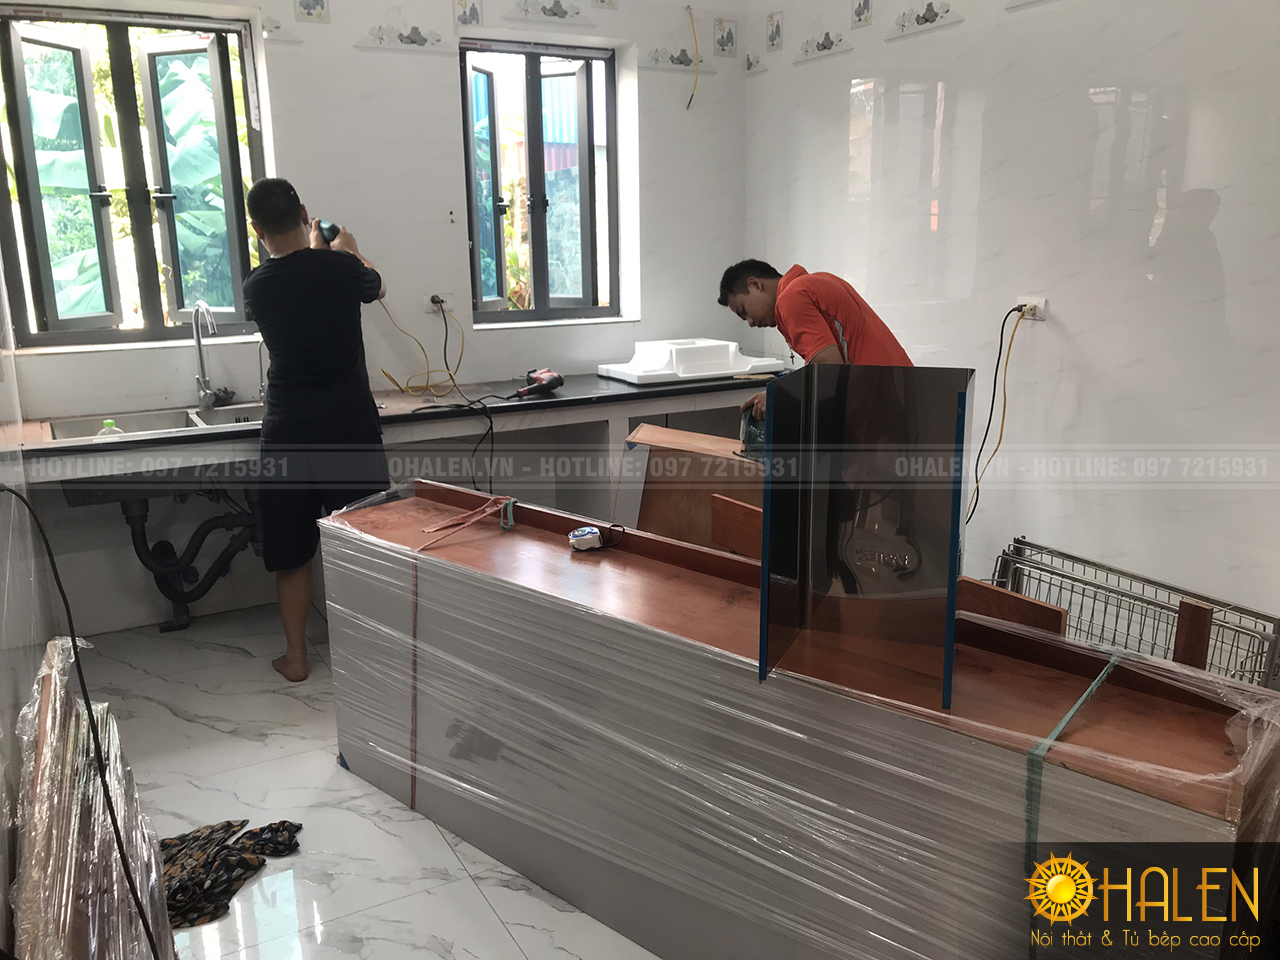 Bắt đầu quá trình lắp đặt tủ bếp tại Sóc Sơn - Hà Nội , gđ anh Liêm